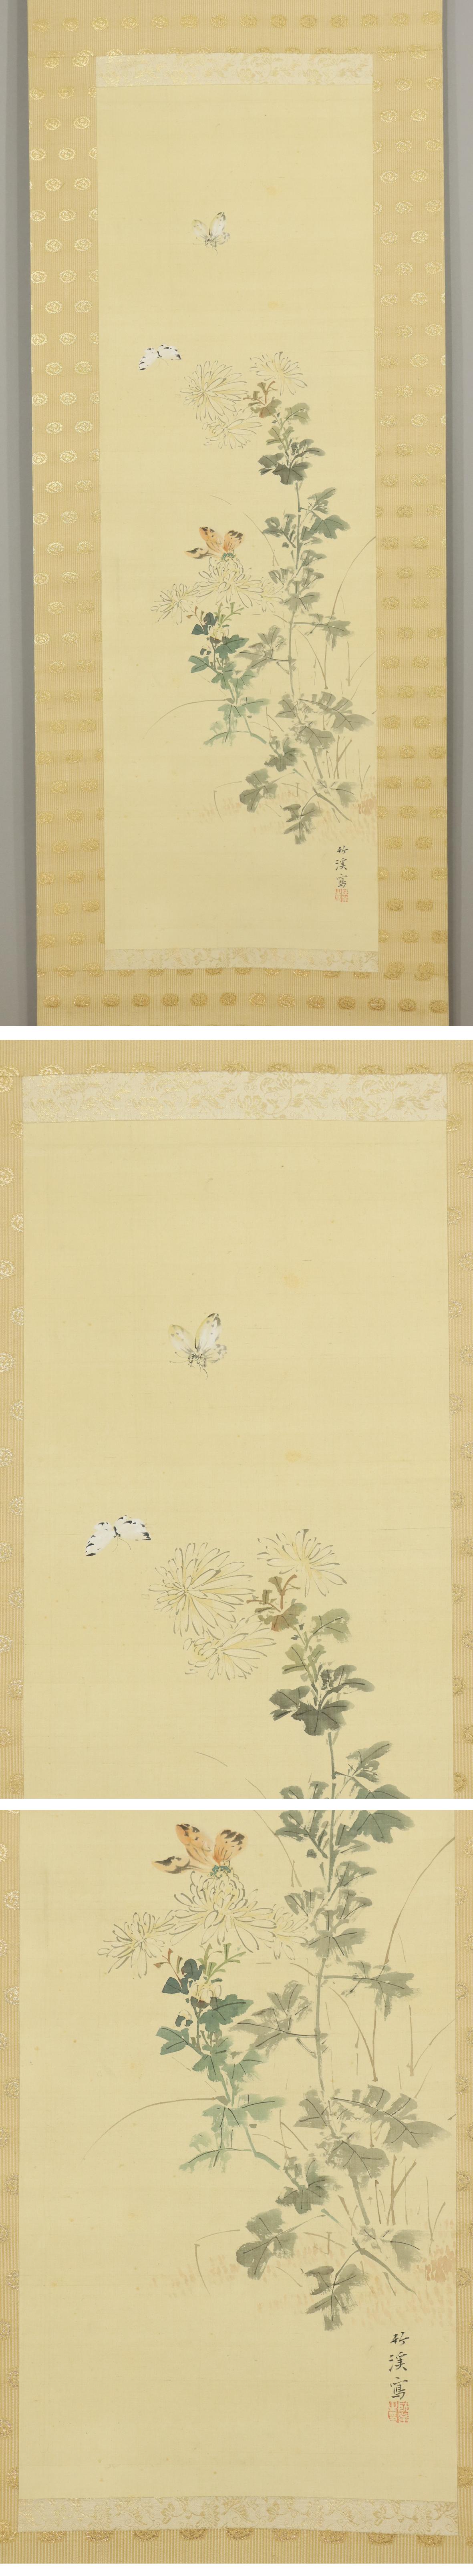 SALE高品質◆中林竹渓◆秋菊飛蝶図◆日本画◆絹本◆掛軸◆m355 花鳥、鳥獣